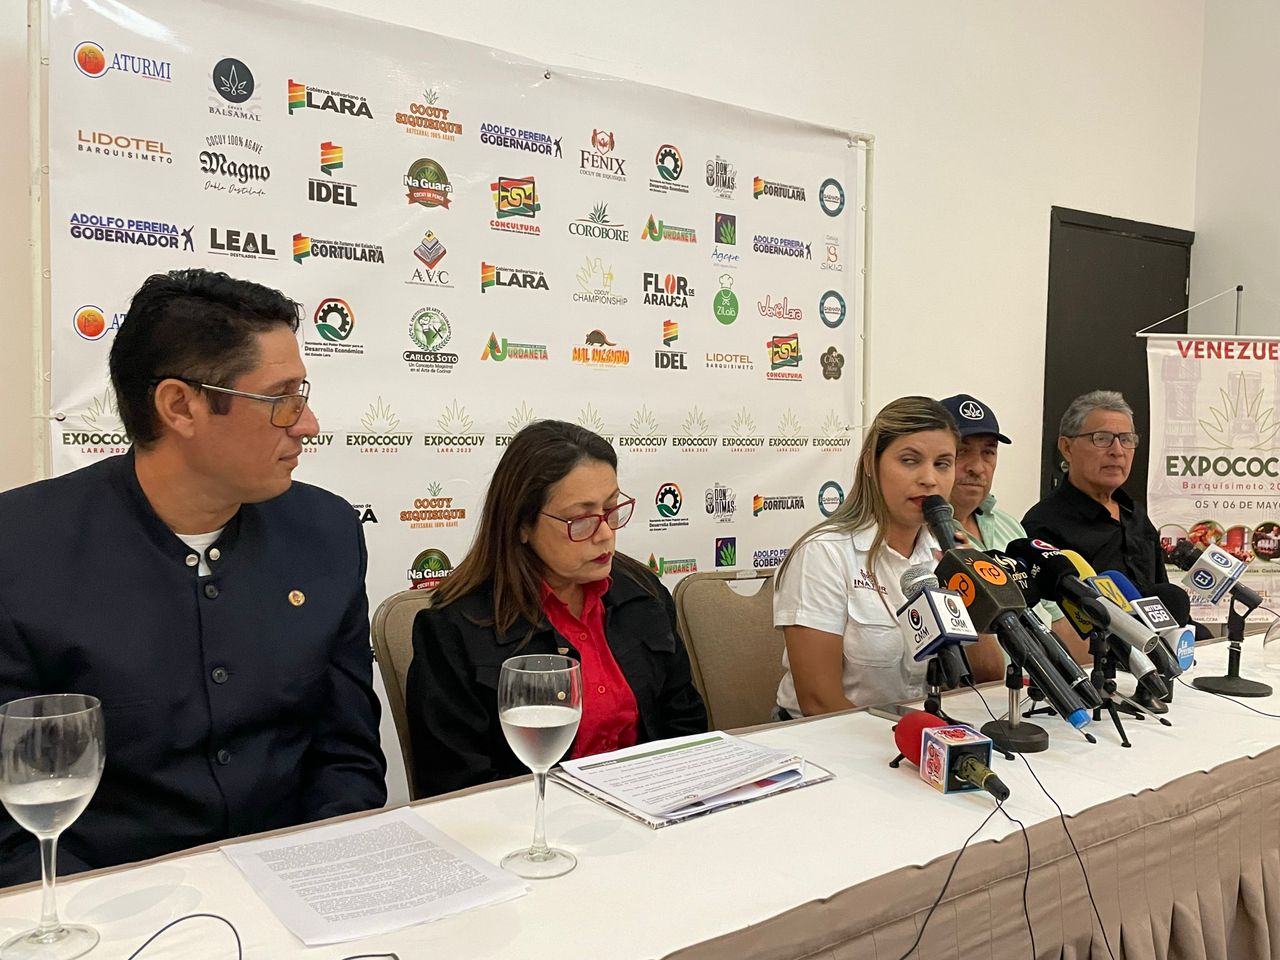 Expococuy Lara 2023 se desarrollará en Barquisimeto el 3 y 4 de junio